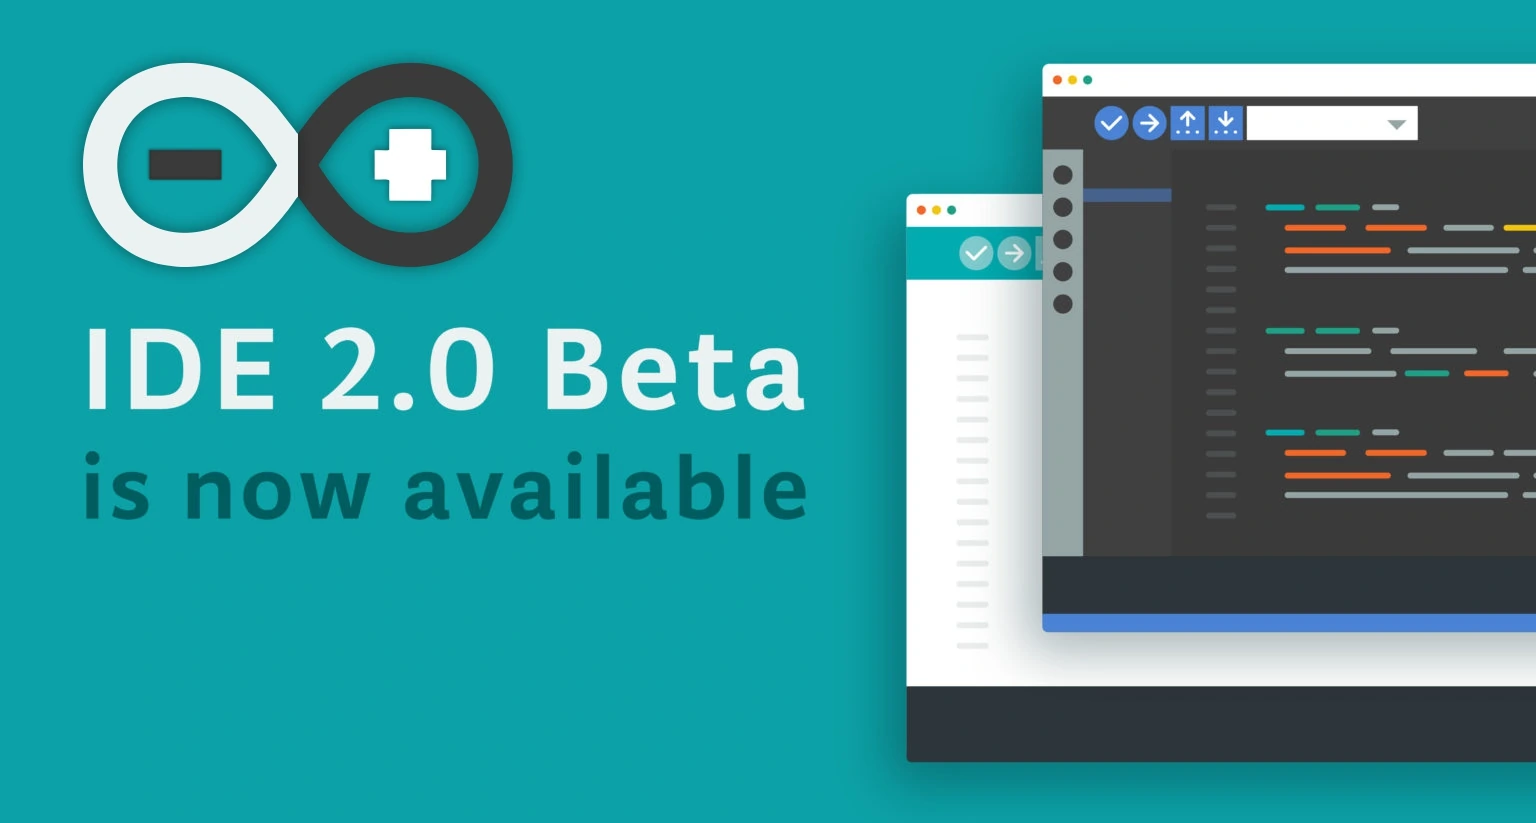 Arduino IDE 2.0 beta version